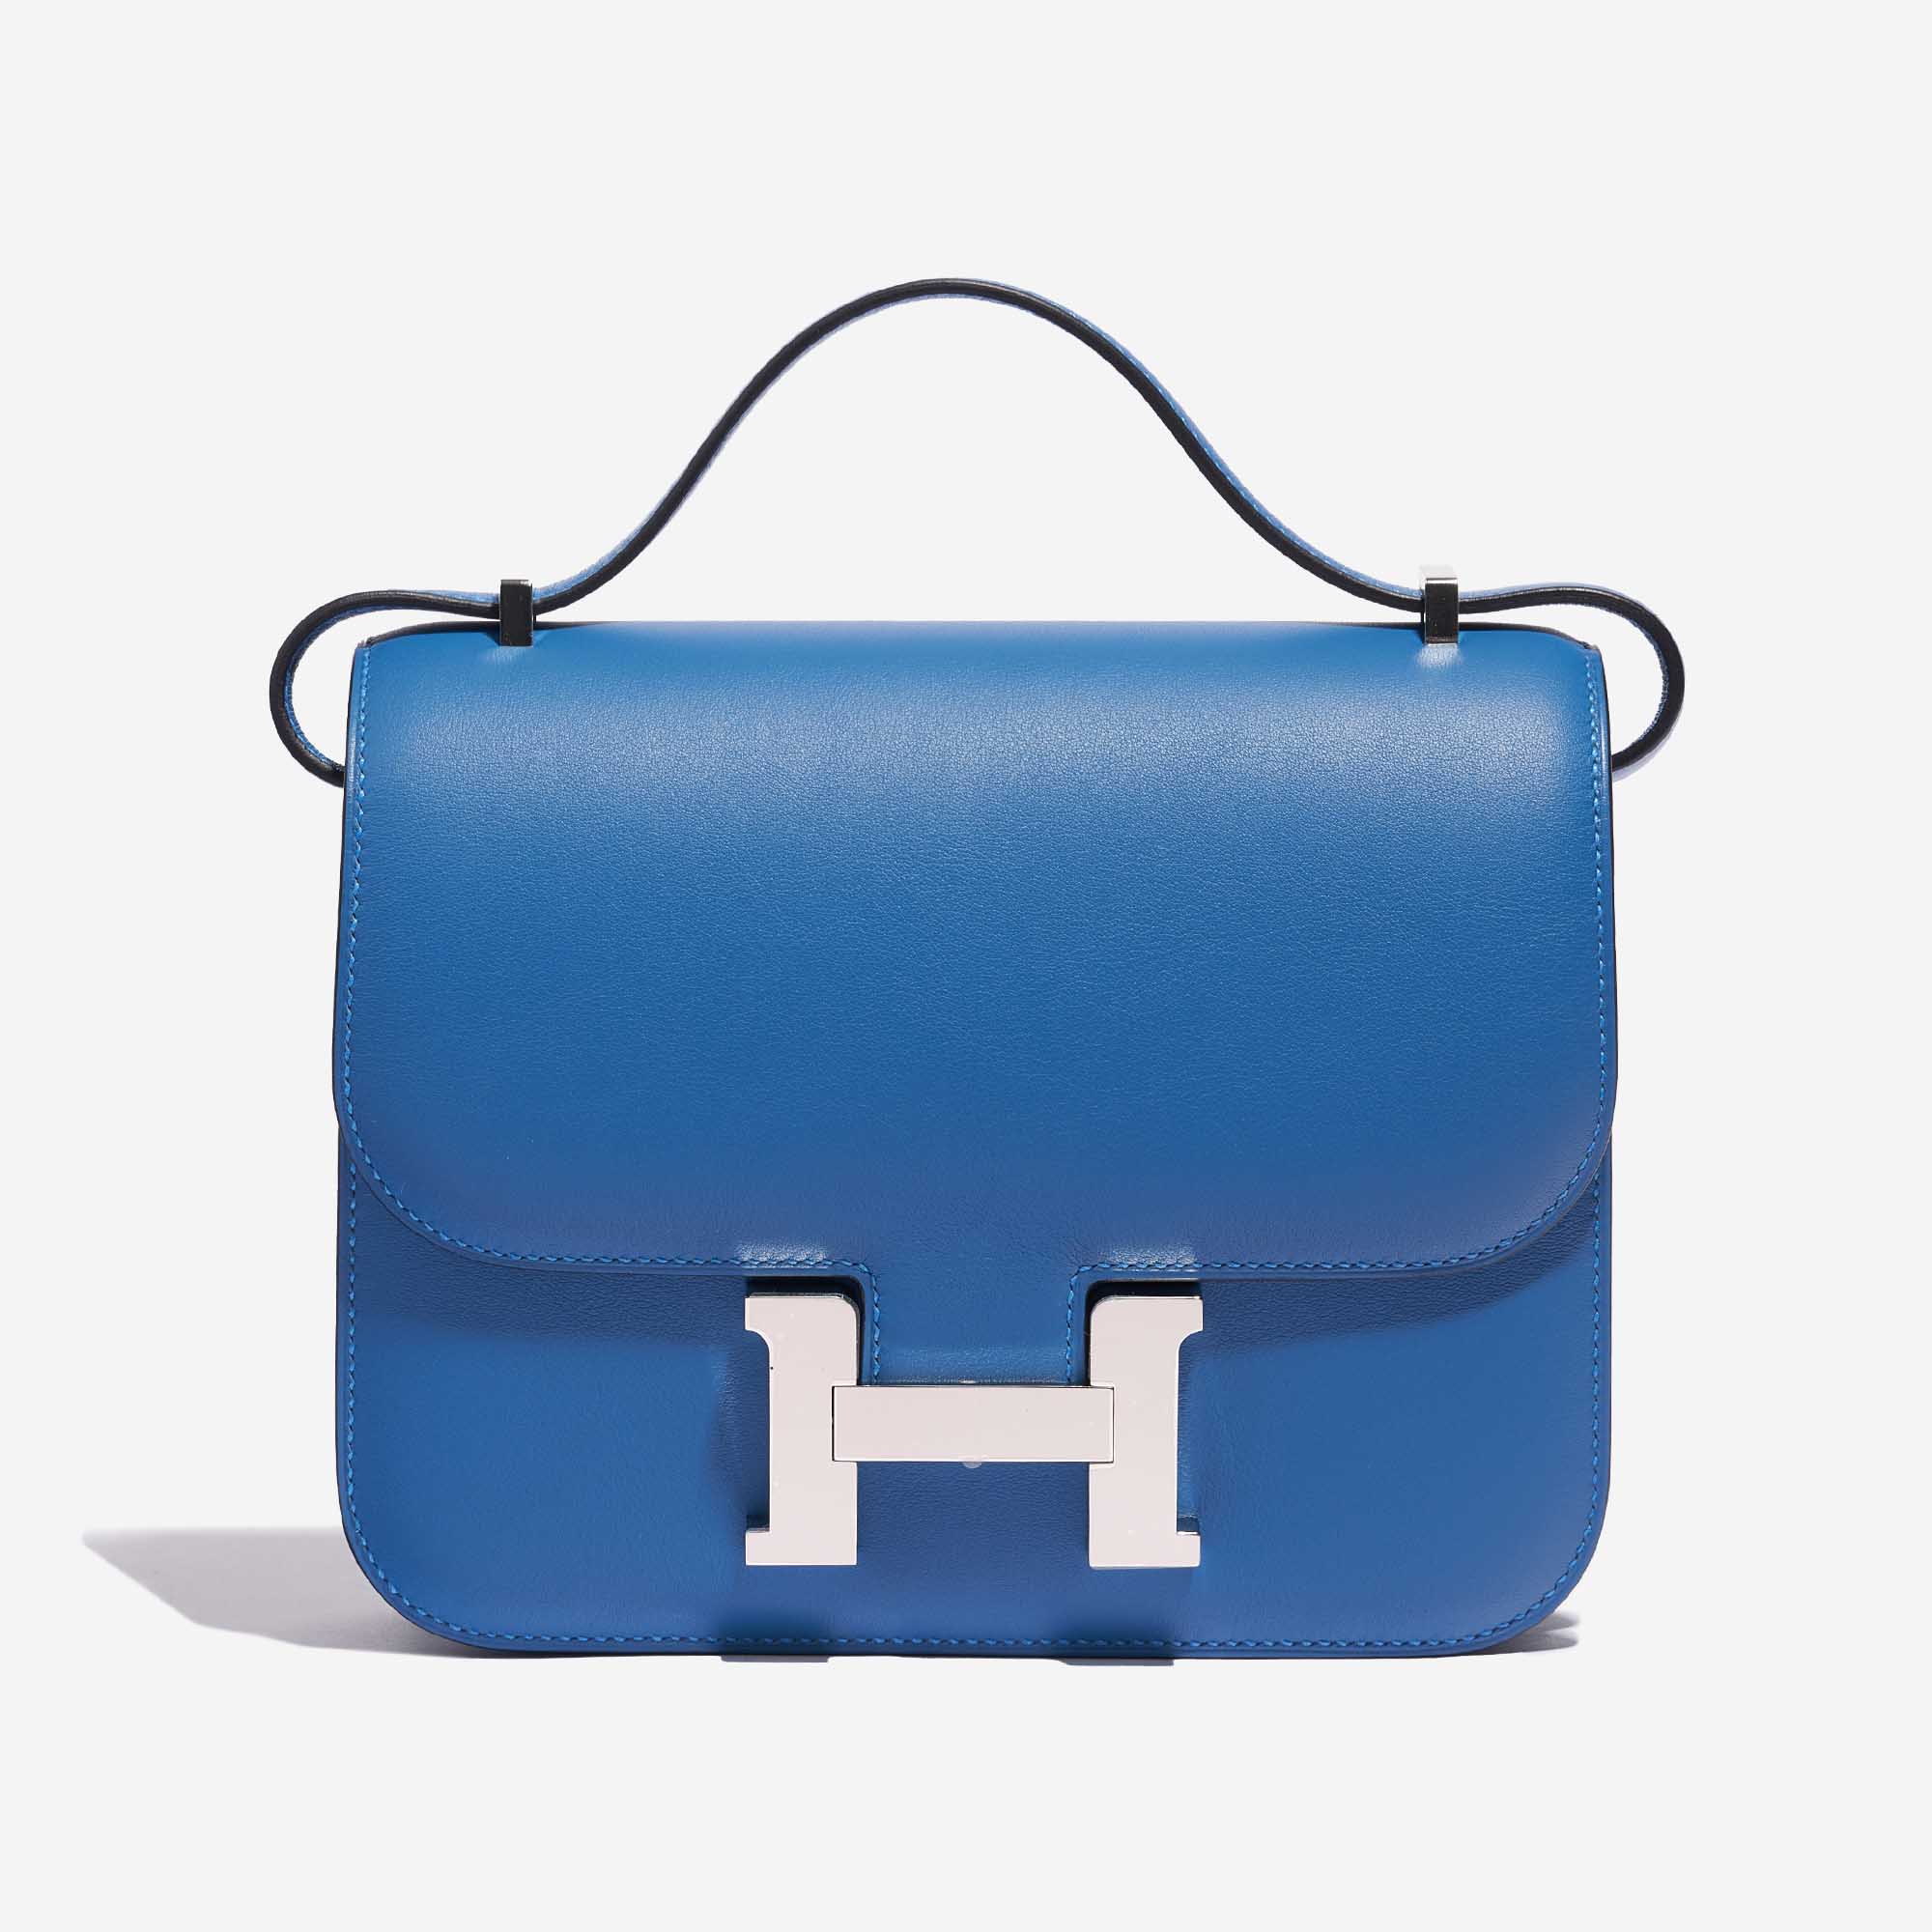 Pre-owned Hermès bag Constance 18 Swift Blue Mykonos / Blue Encre Blue Front | Sell your designer bag on Saclab.com